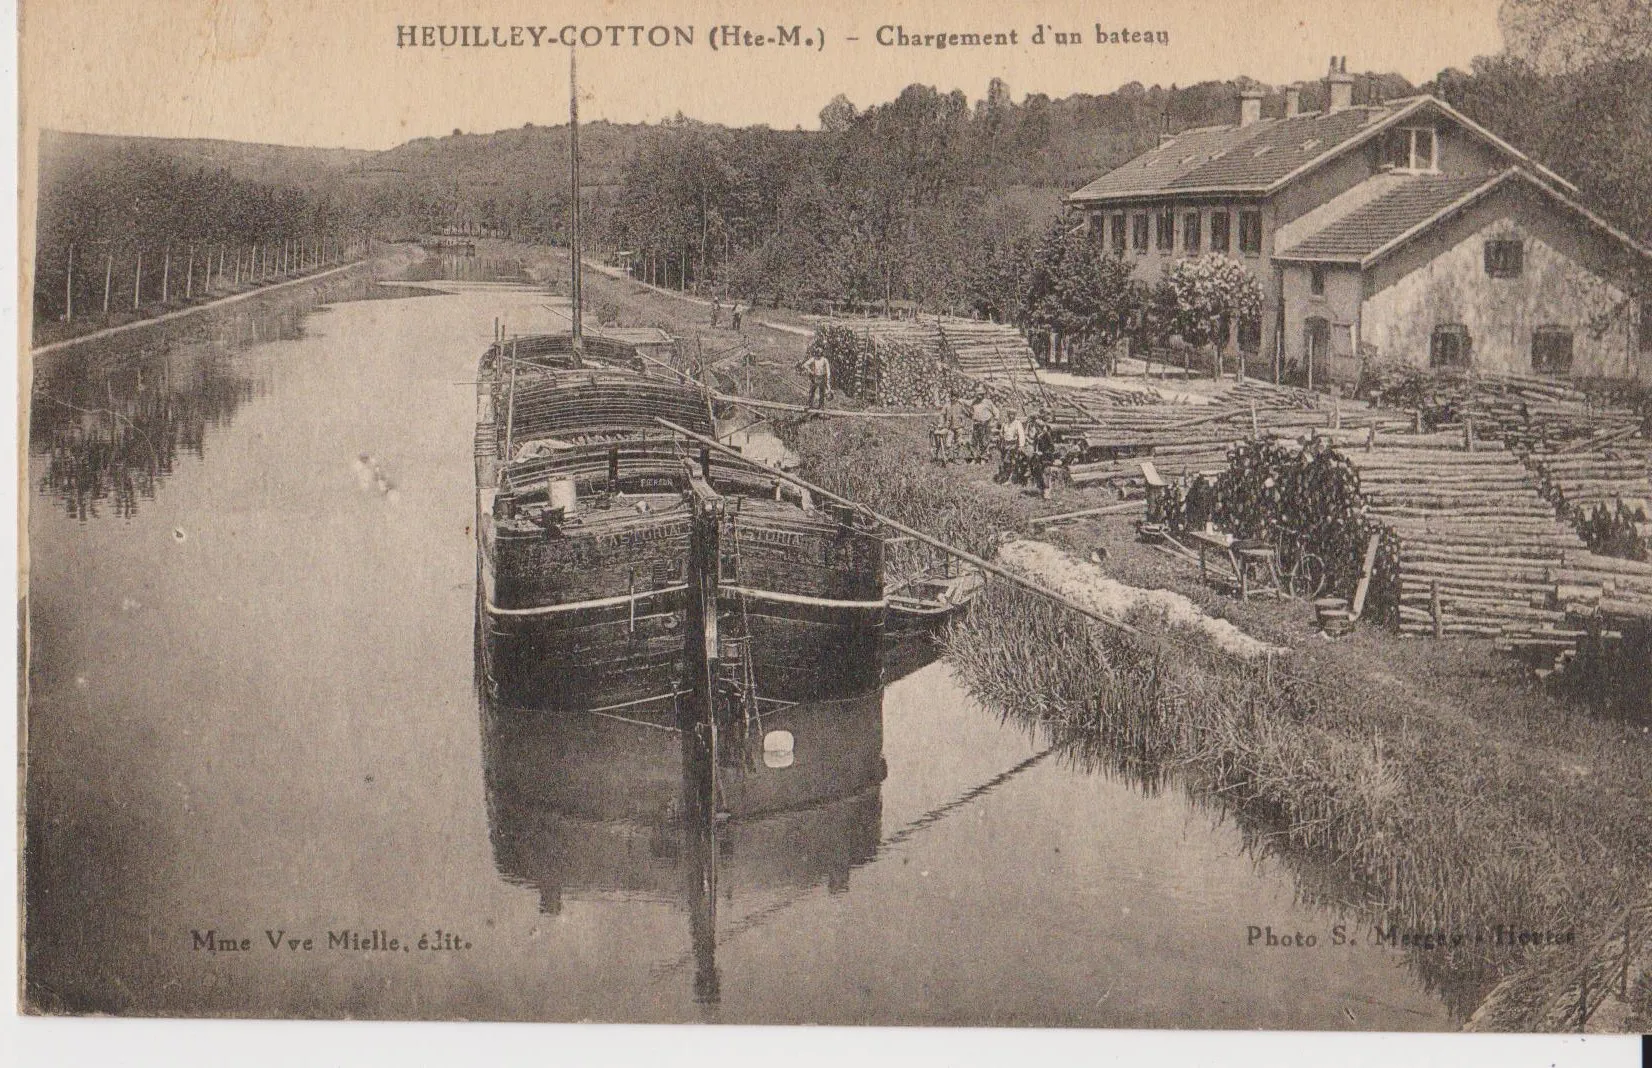 Photo showing: Heuilley-Cotton chargement d'un bateau